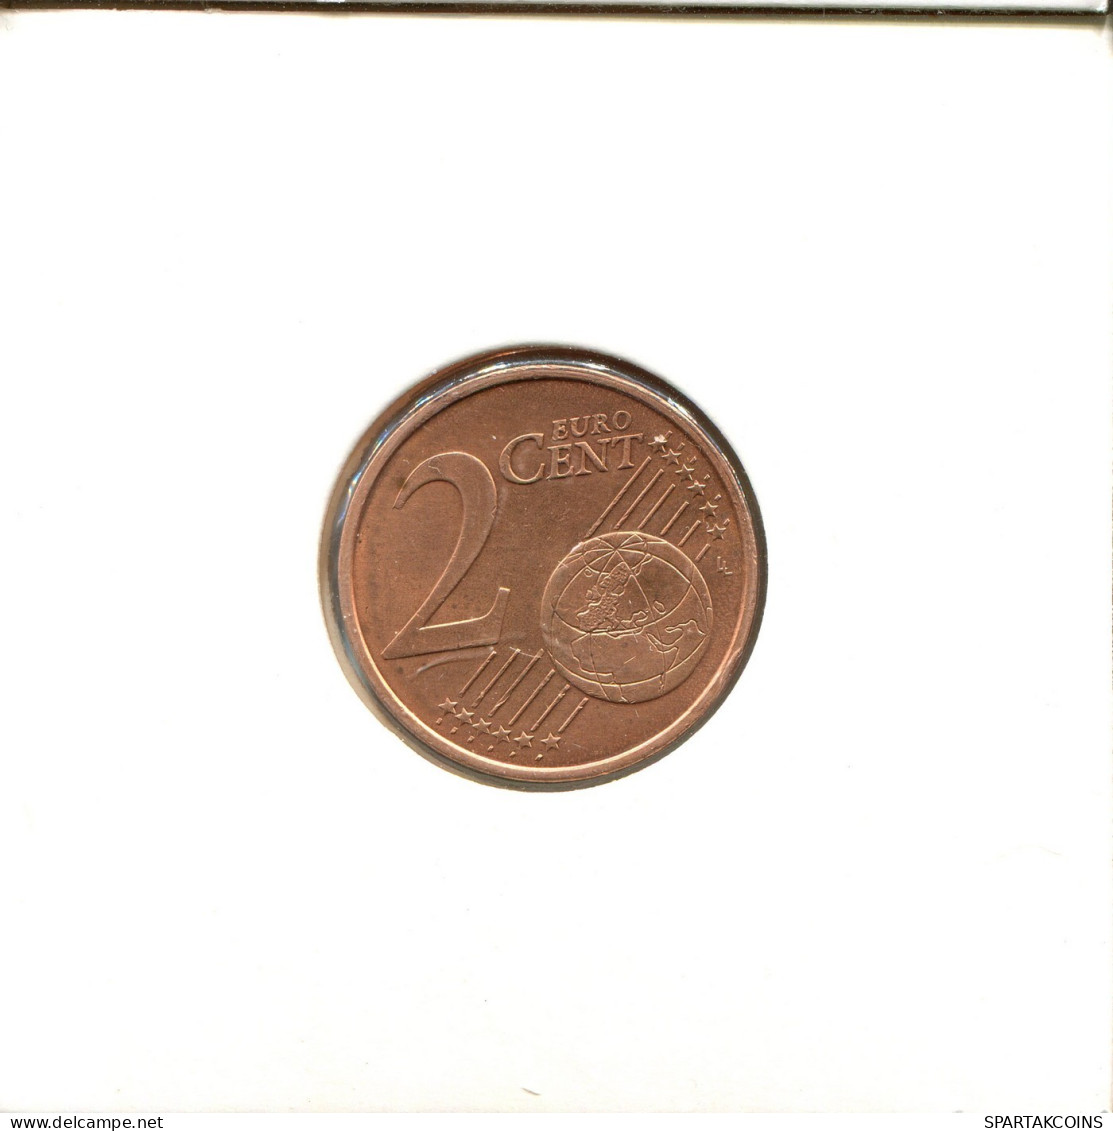 2 EURO CENTS 1999 FRANCE Coin Coin #EU105.U.A - Francia